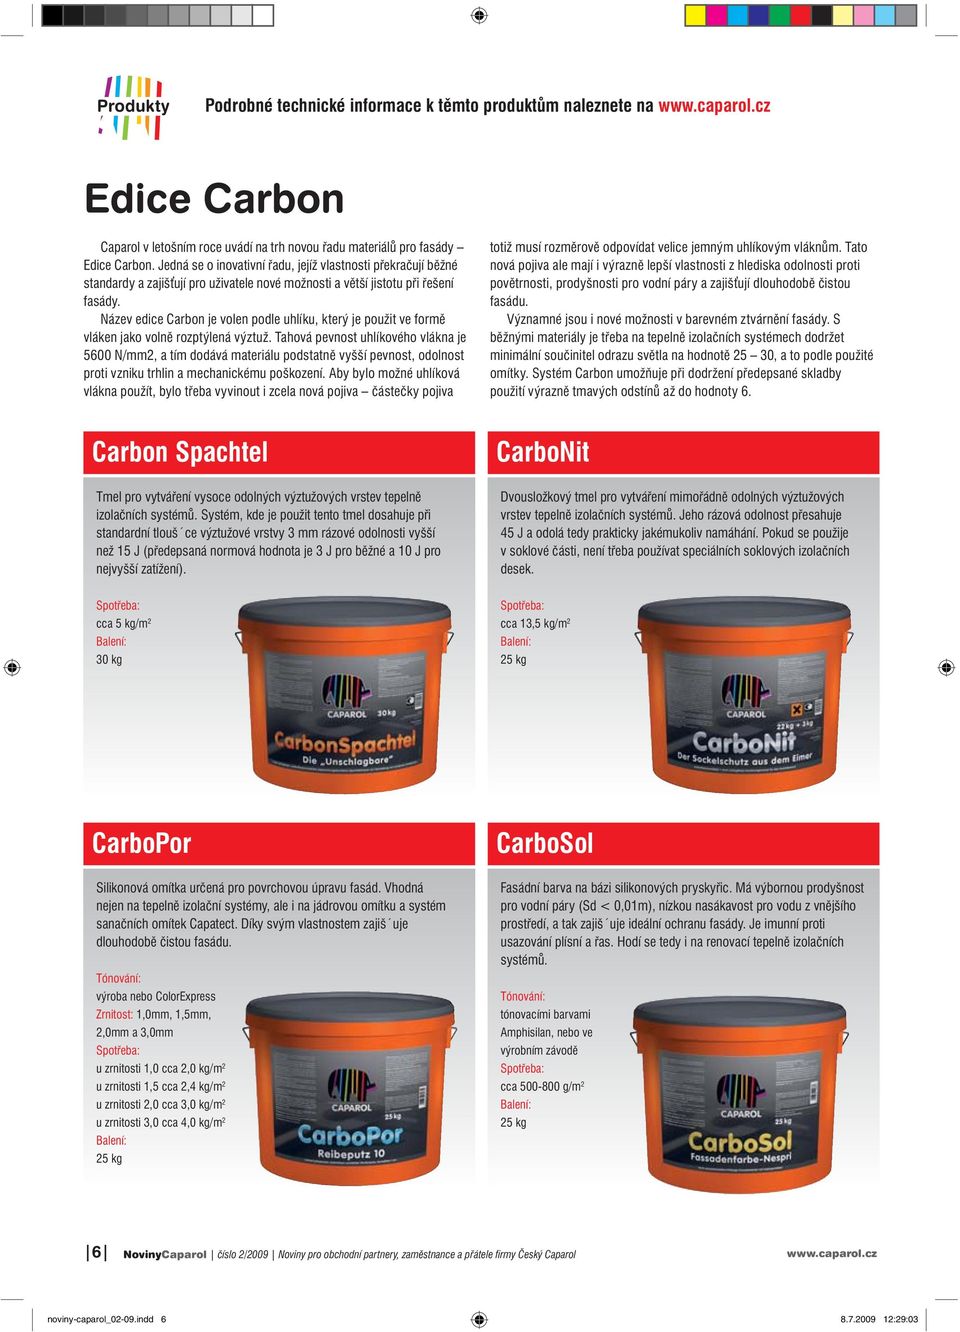 Název edice Carbon je volen podle uhlíku, který je použit ve formě vláken jako volně rozptýlená výztuž.